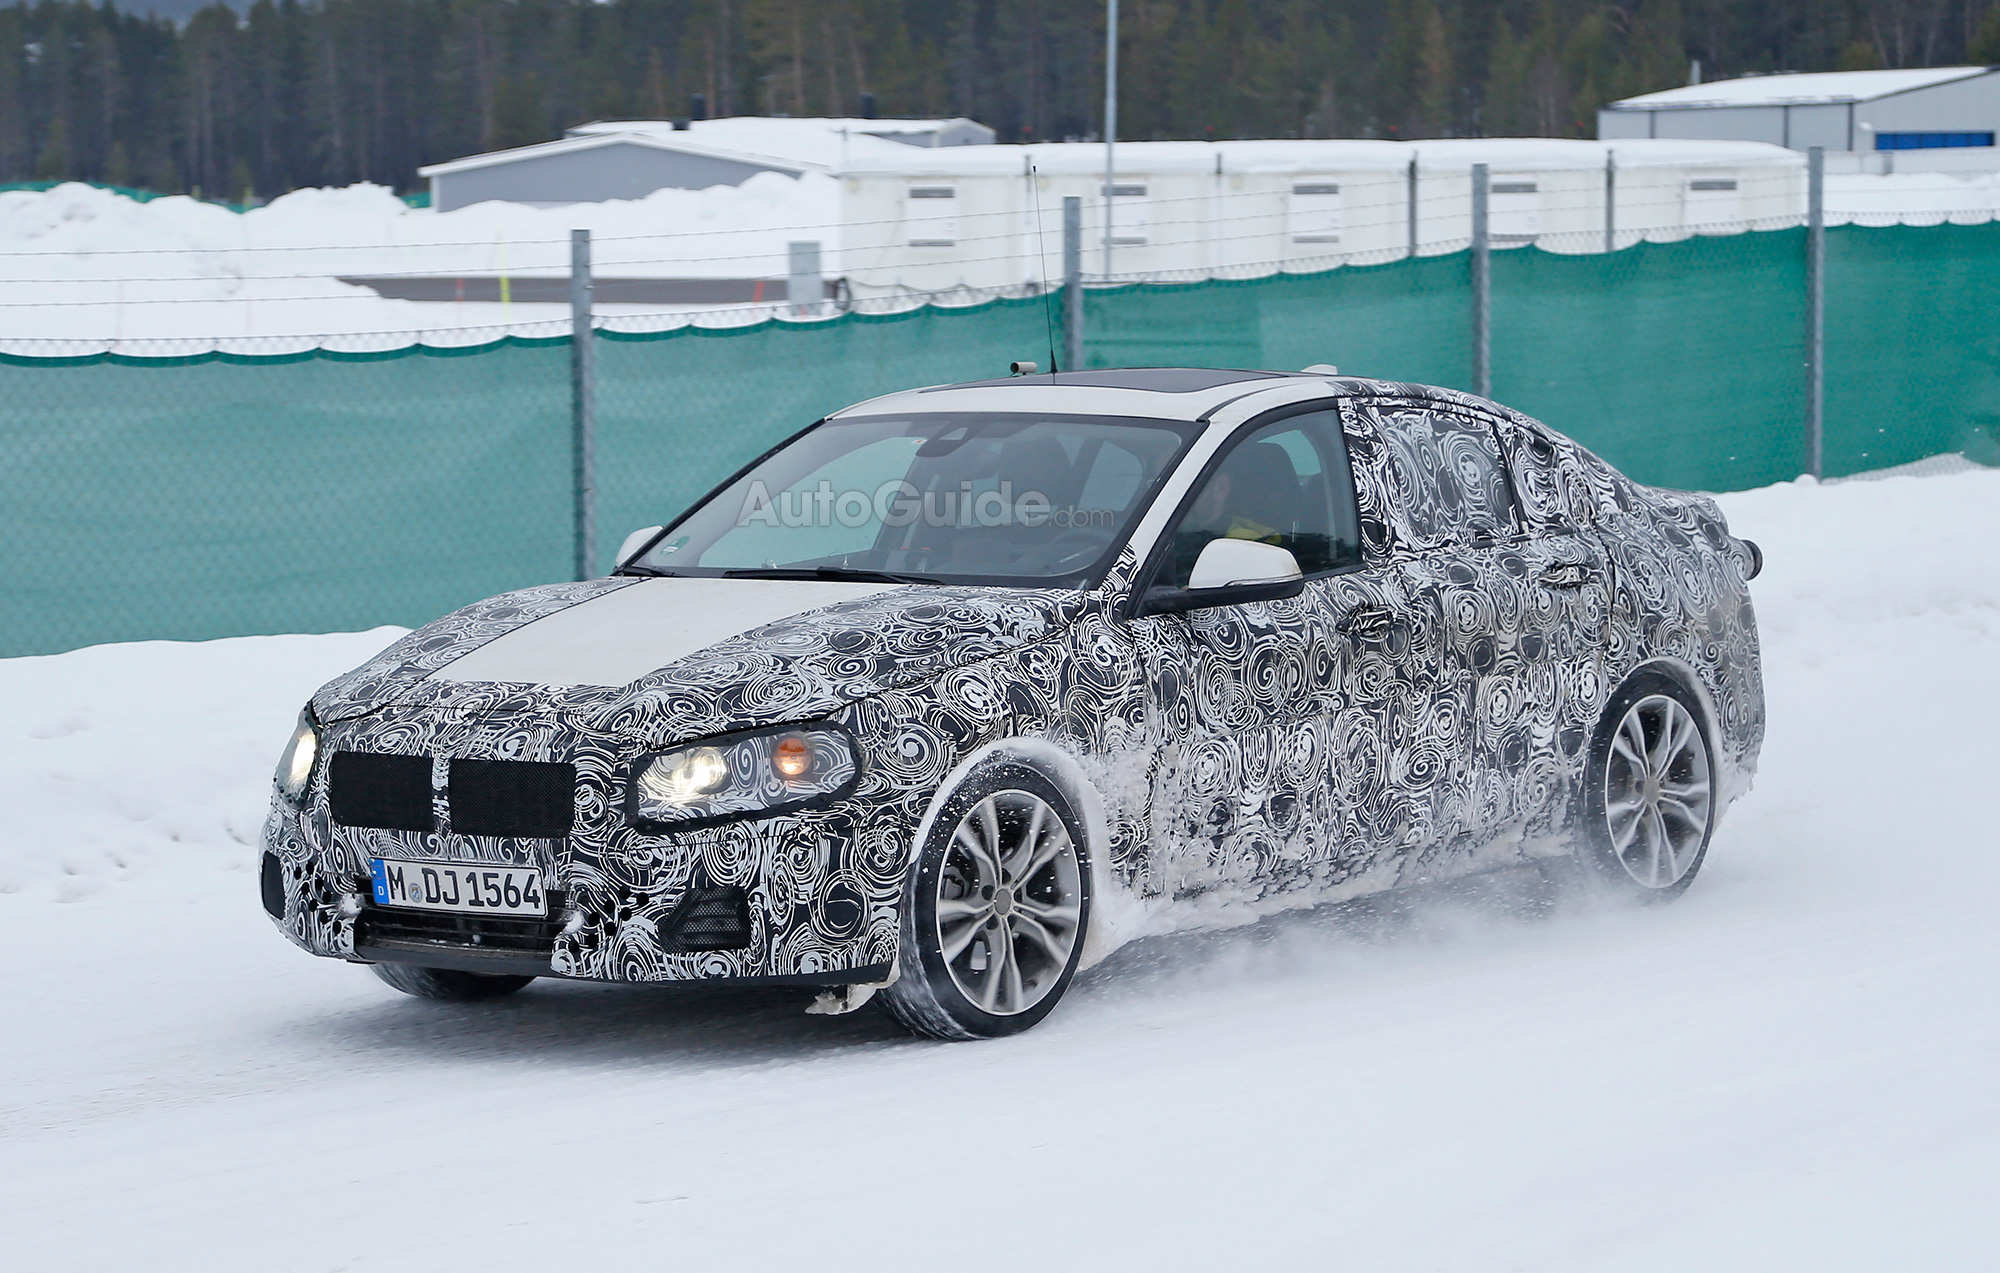 2016 BMW 1-Series sedan caught during tests